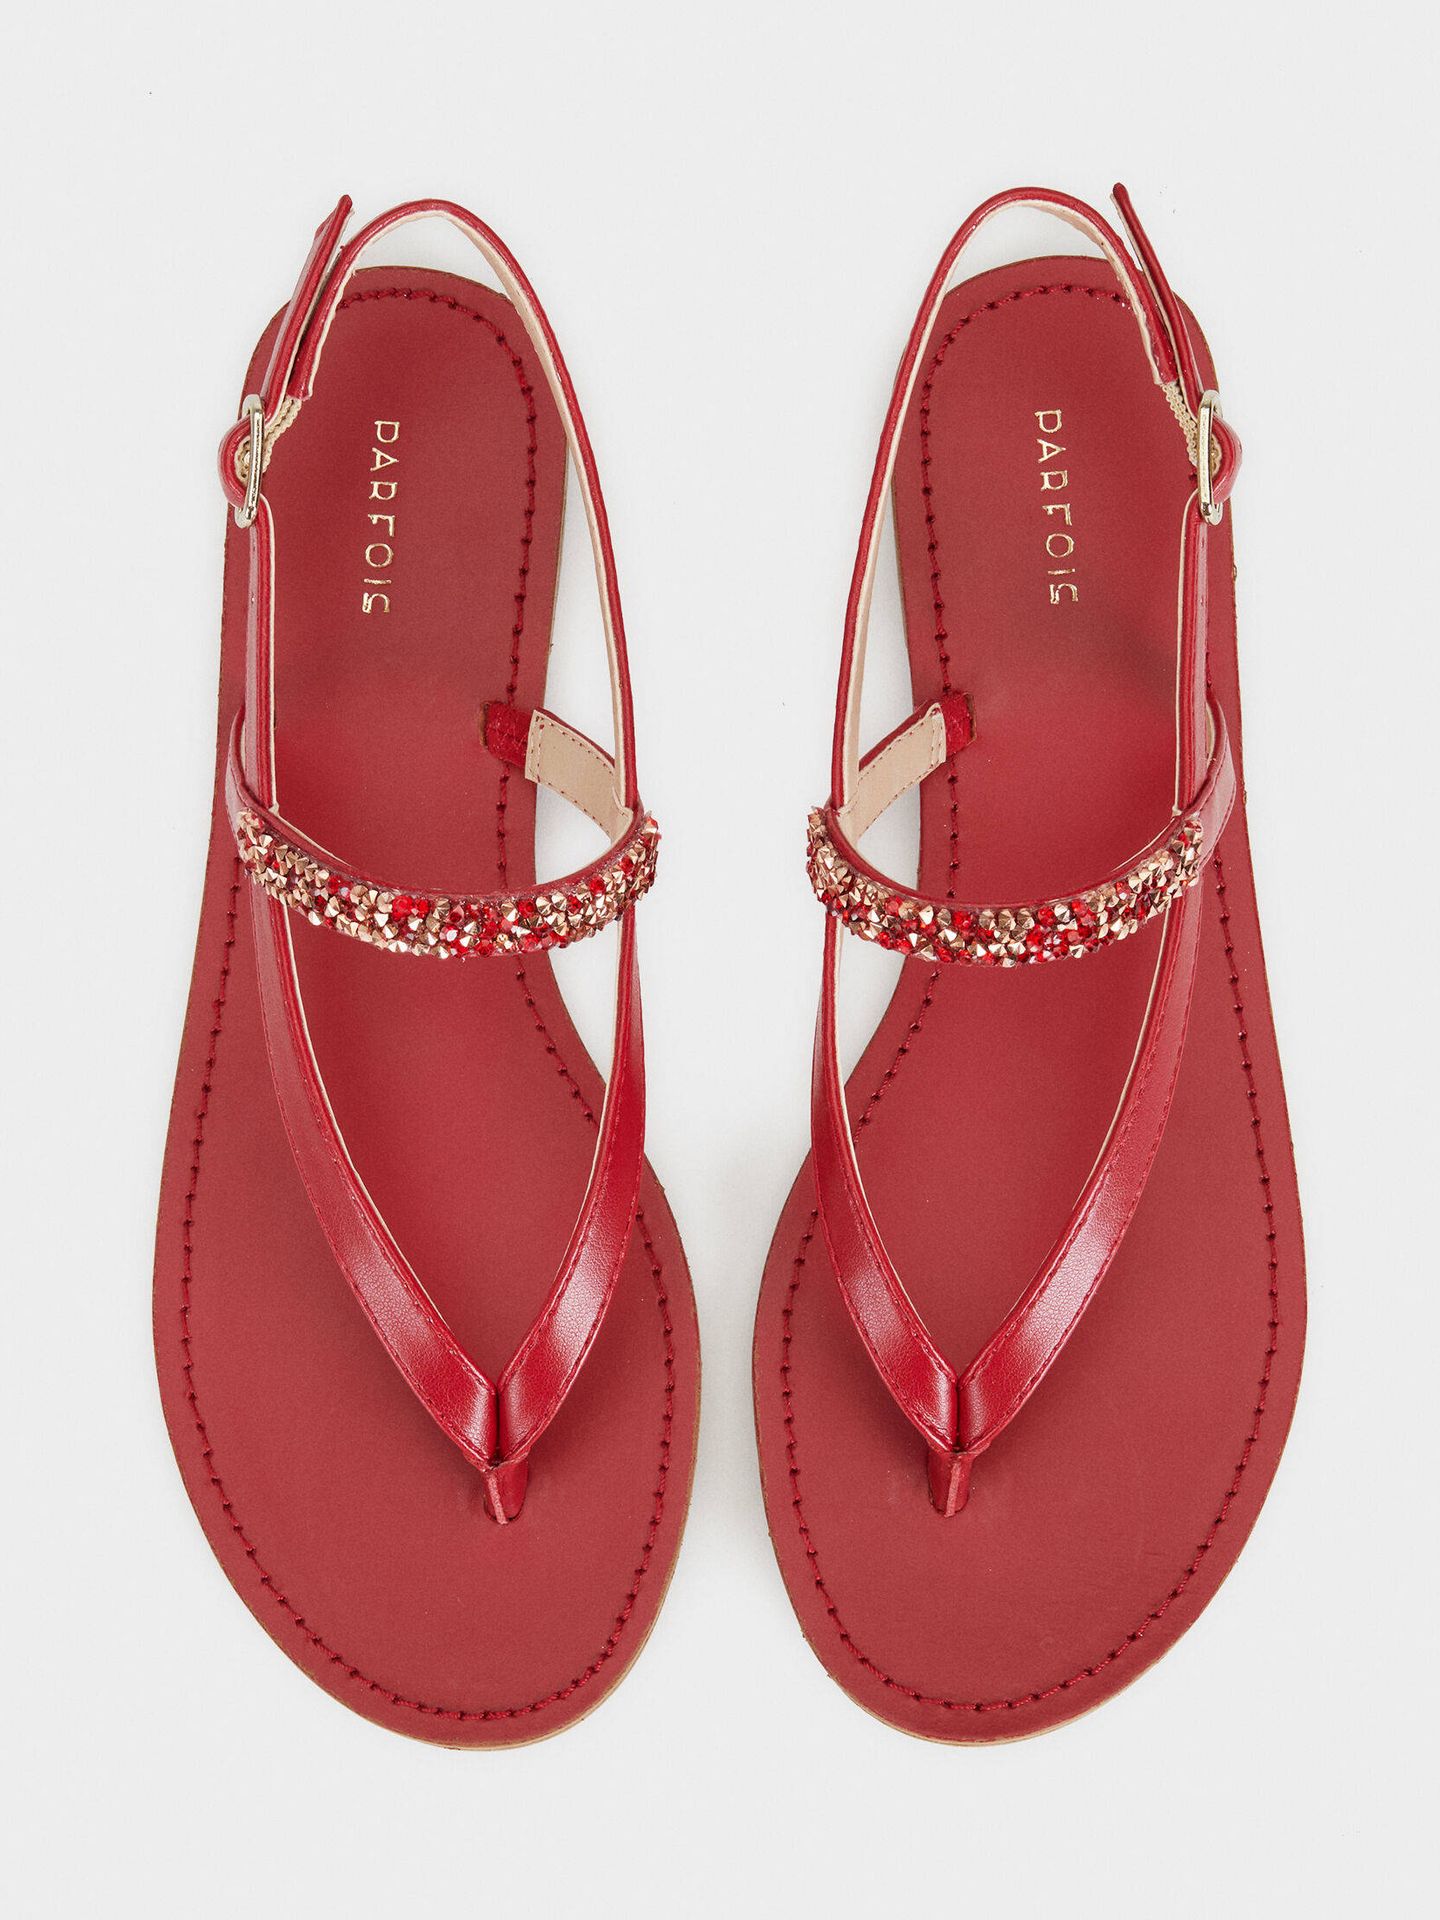 Las sandalias de Parfois en color rojo. (Cortesía)